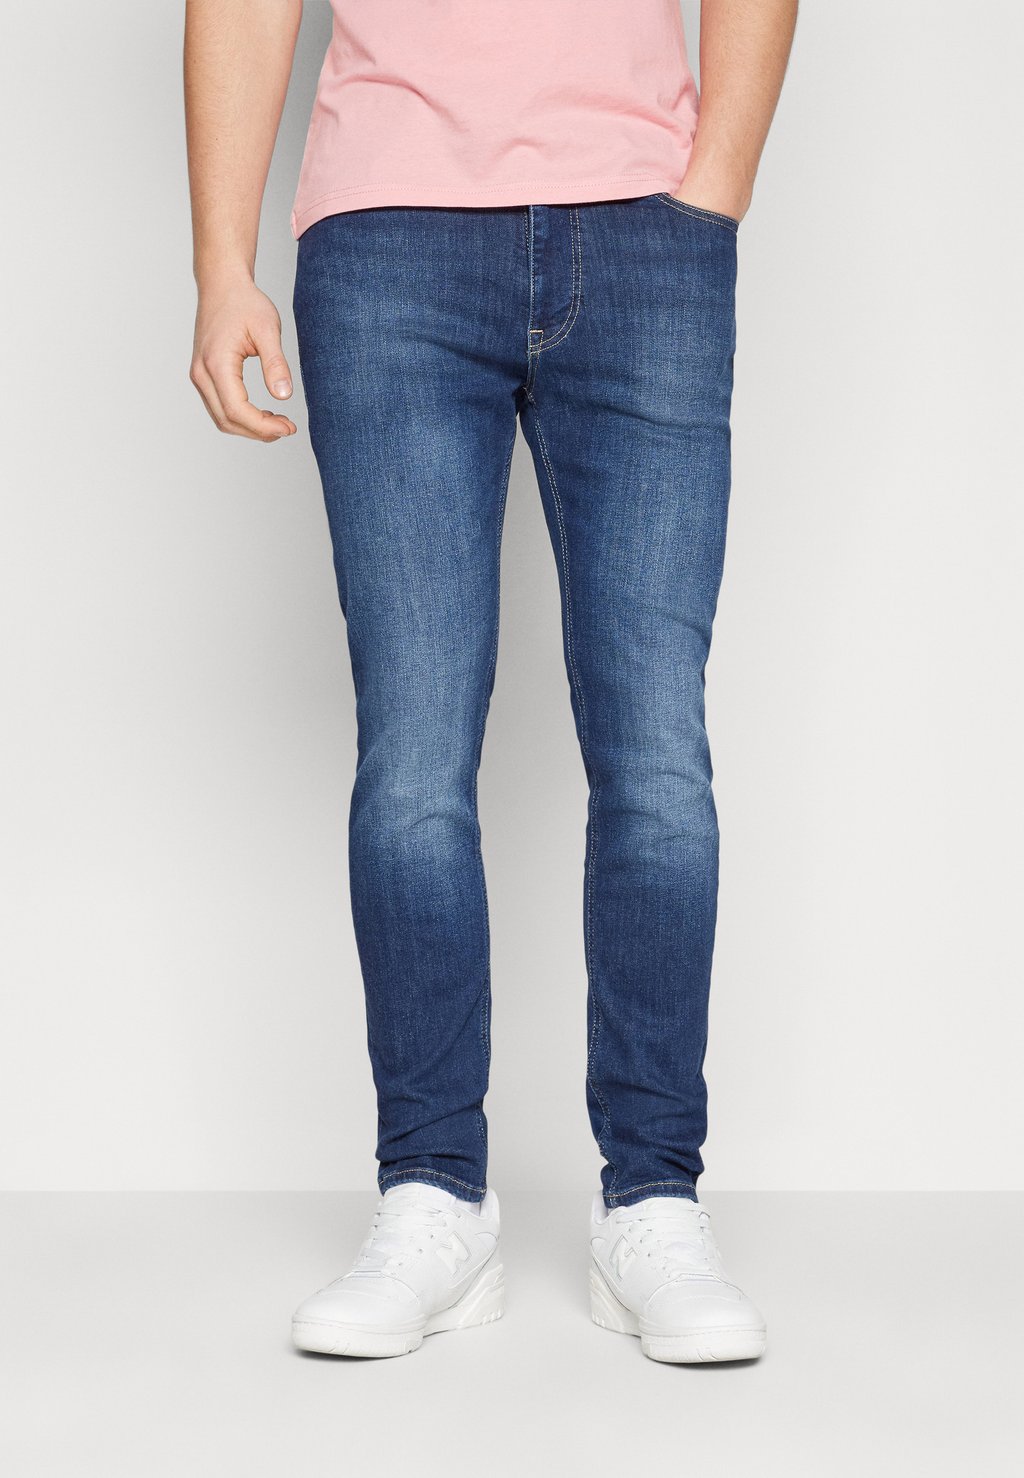 Джинсы Skinny Fit SIMON Tommy Jeans, цвет denim dark джинсы клеш skinny fit fade pepe jeans цвет dark blue denim